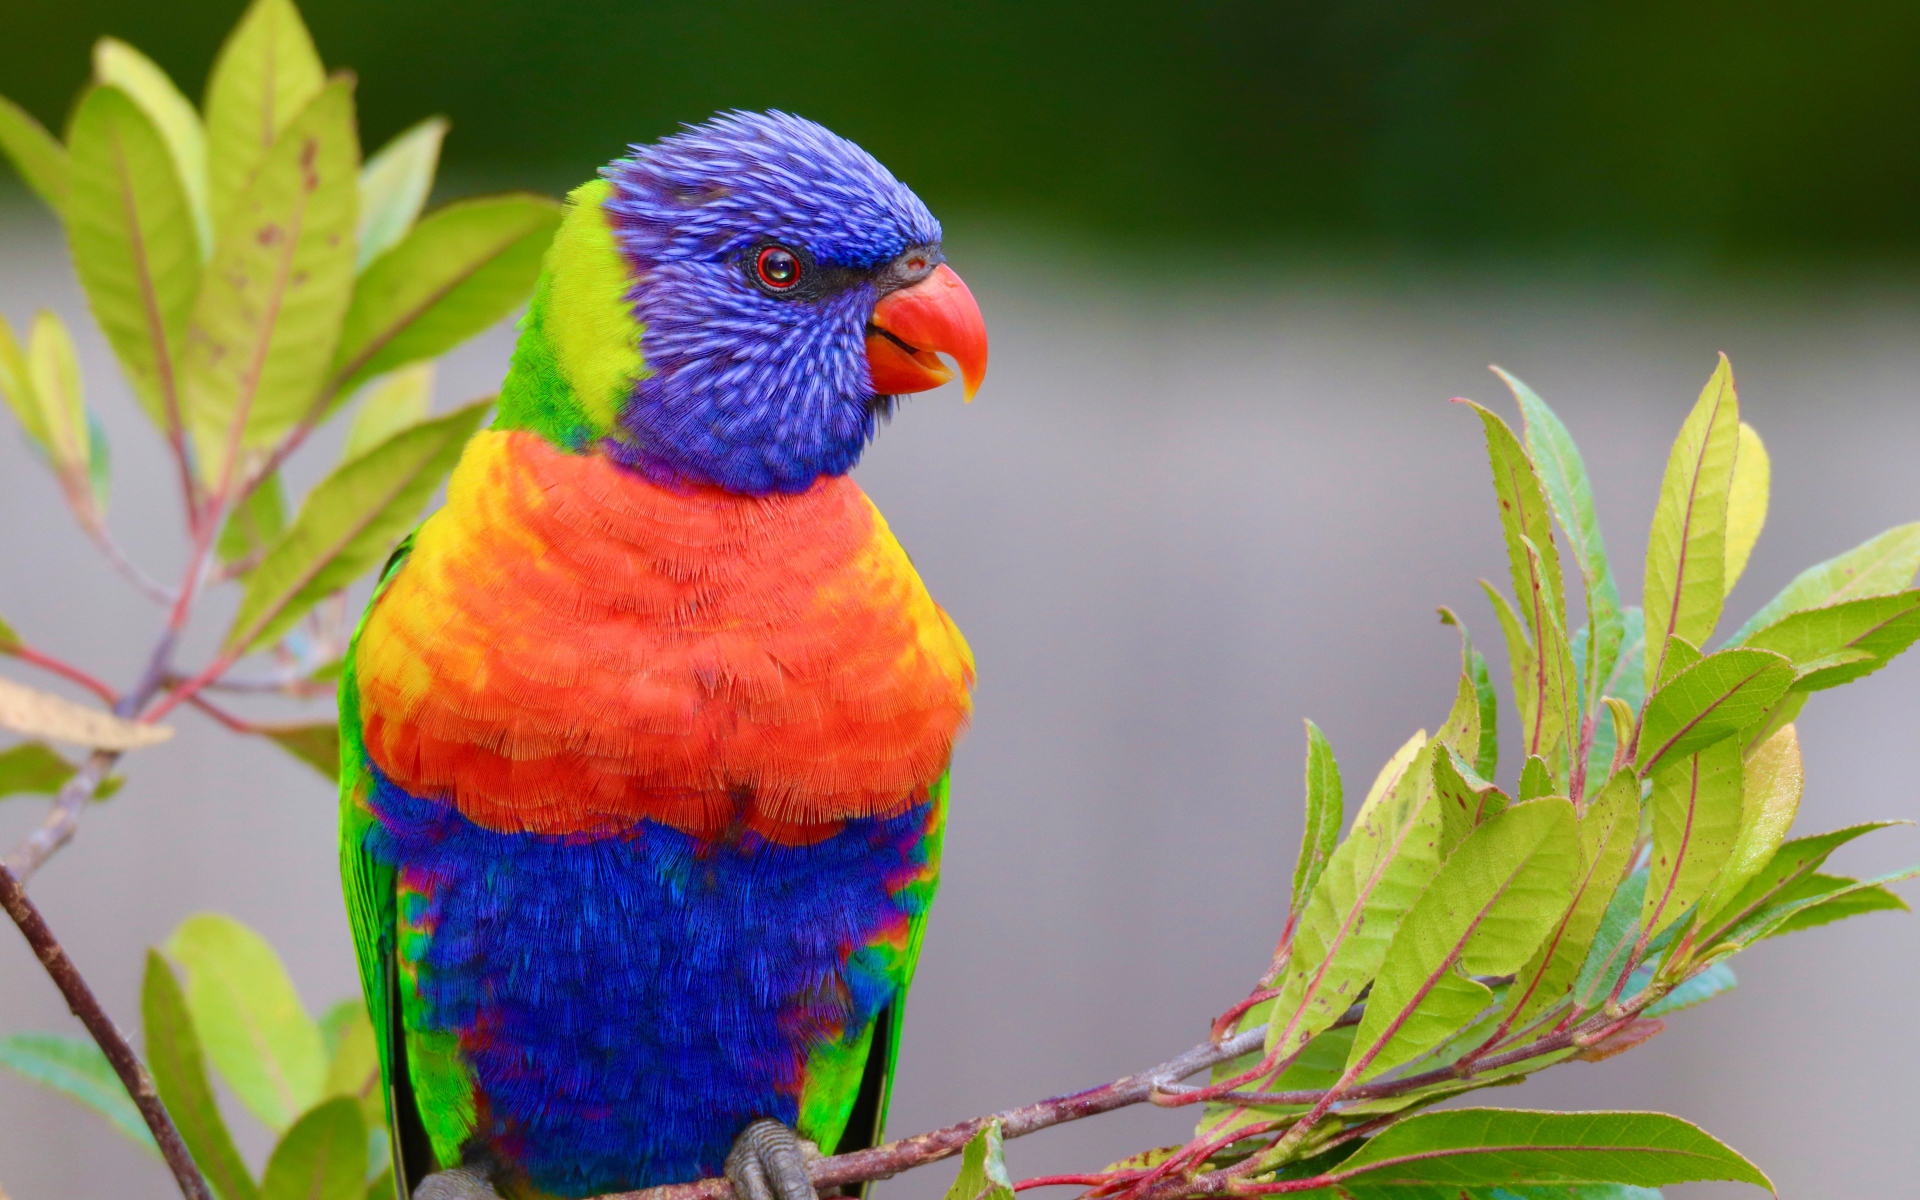 Разноцветный красивый попугай сидит на ветке